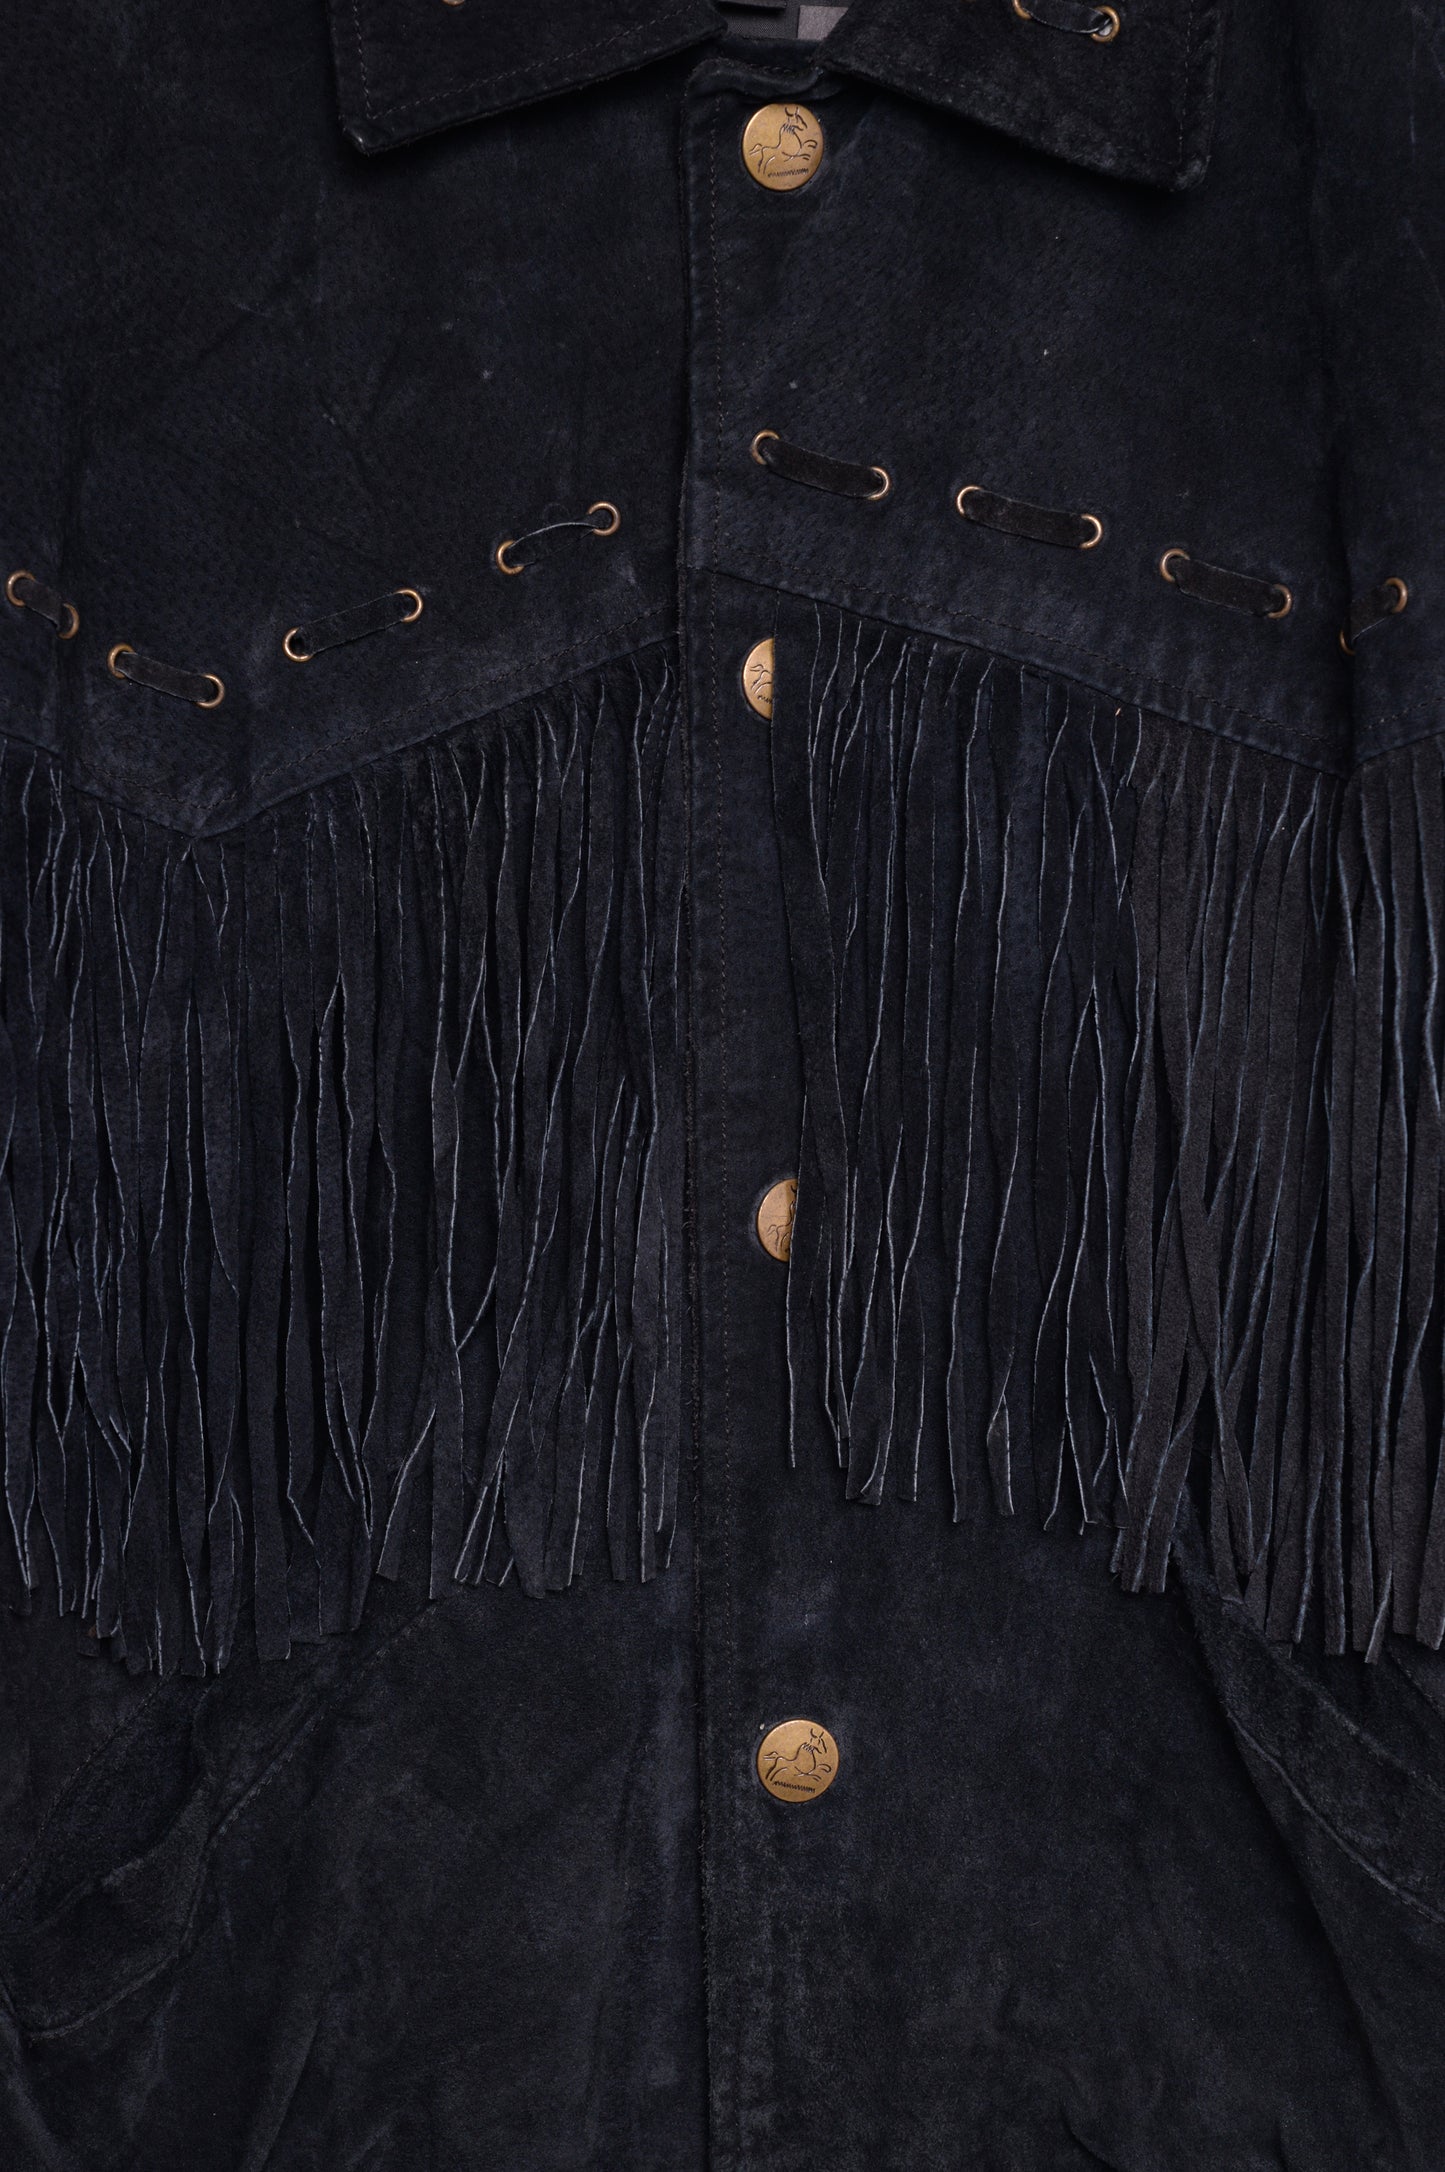 1980s Wilsons Fringe Leather Jacket